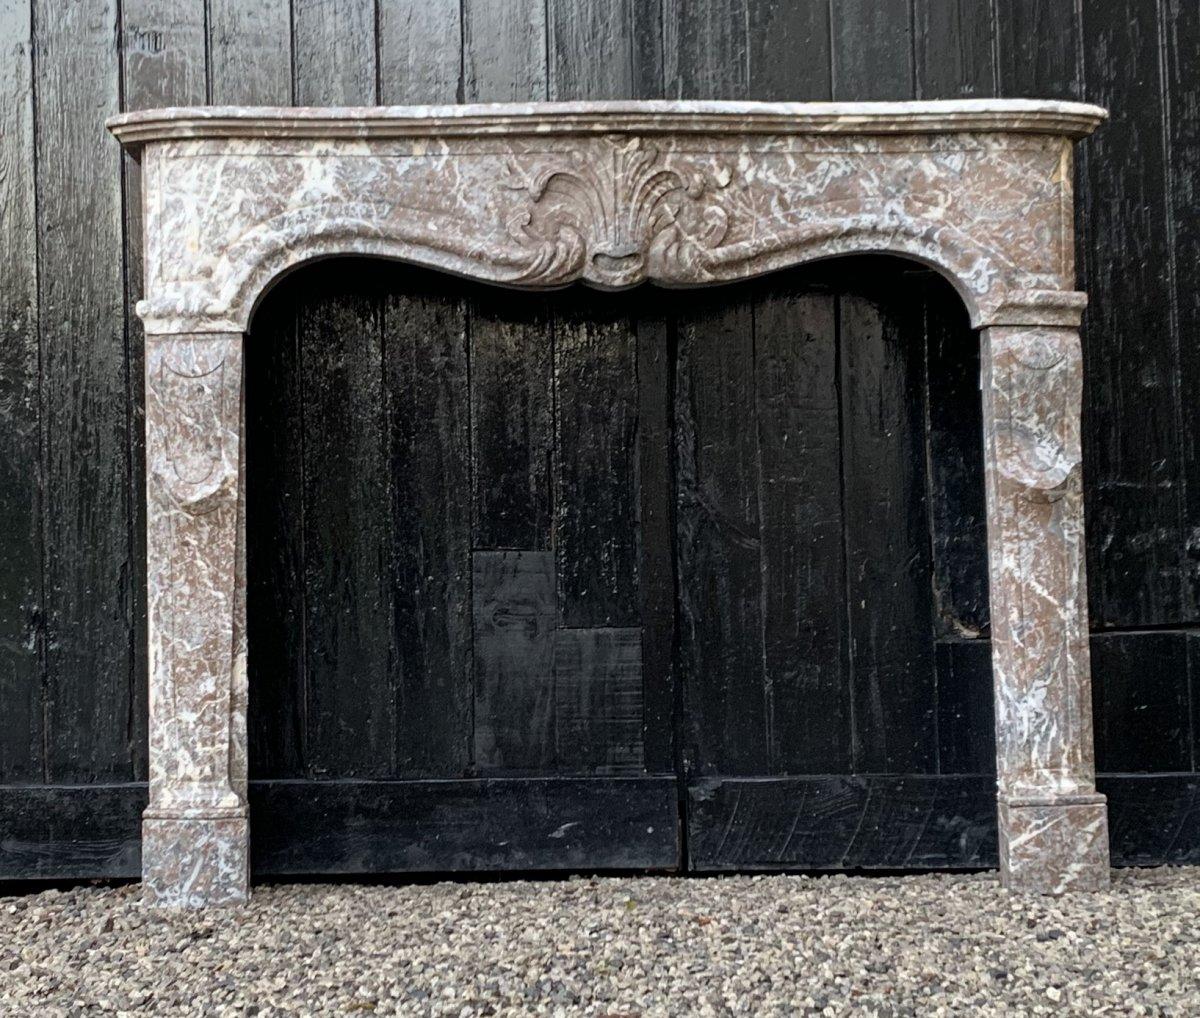 Kamin Louis XV aus grauem Ardenner Marmor 

Abmessungen Kamin: 97 x 118cm